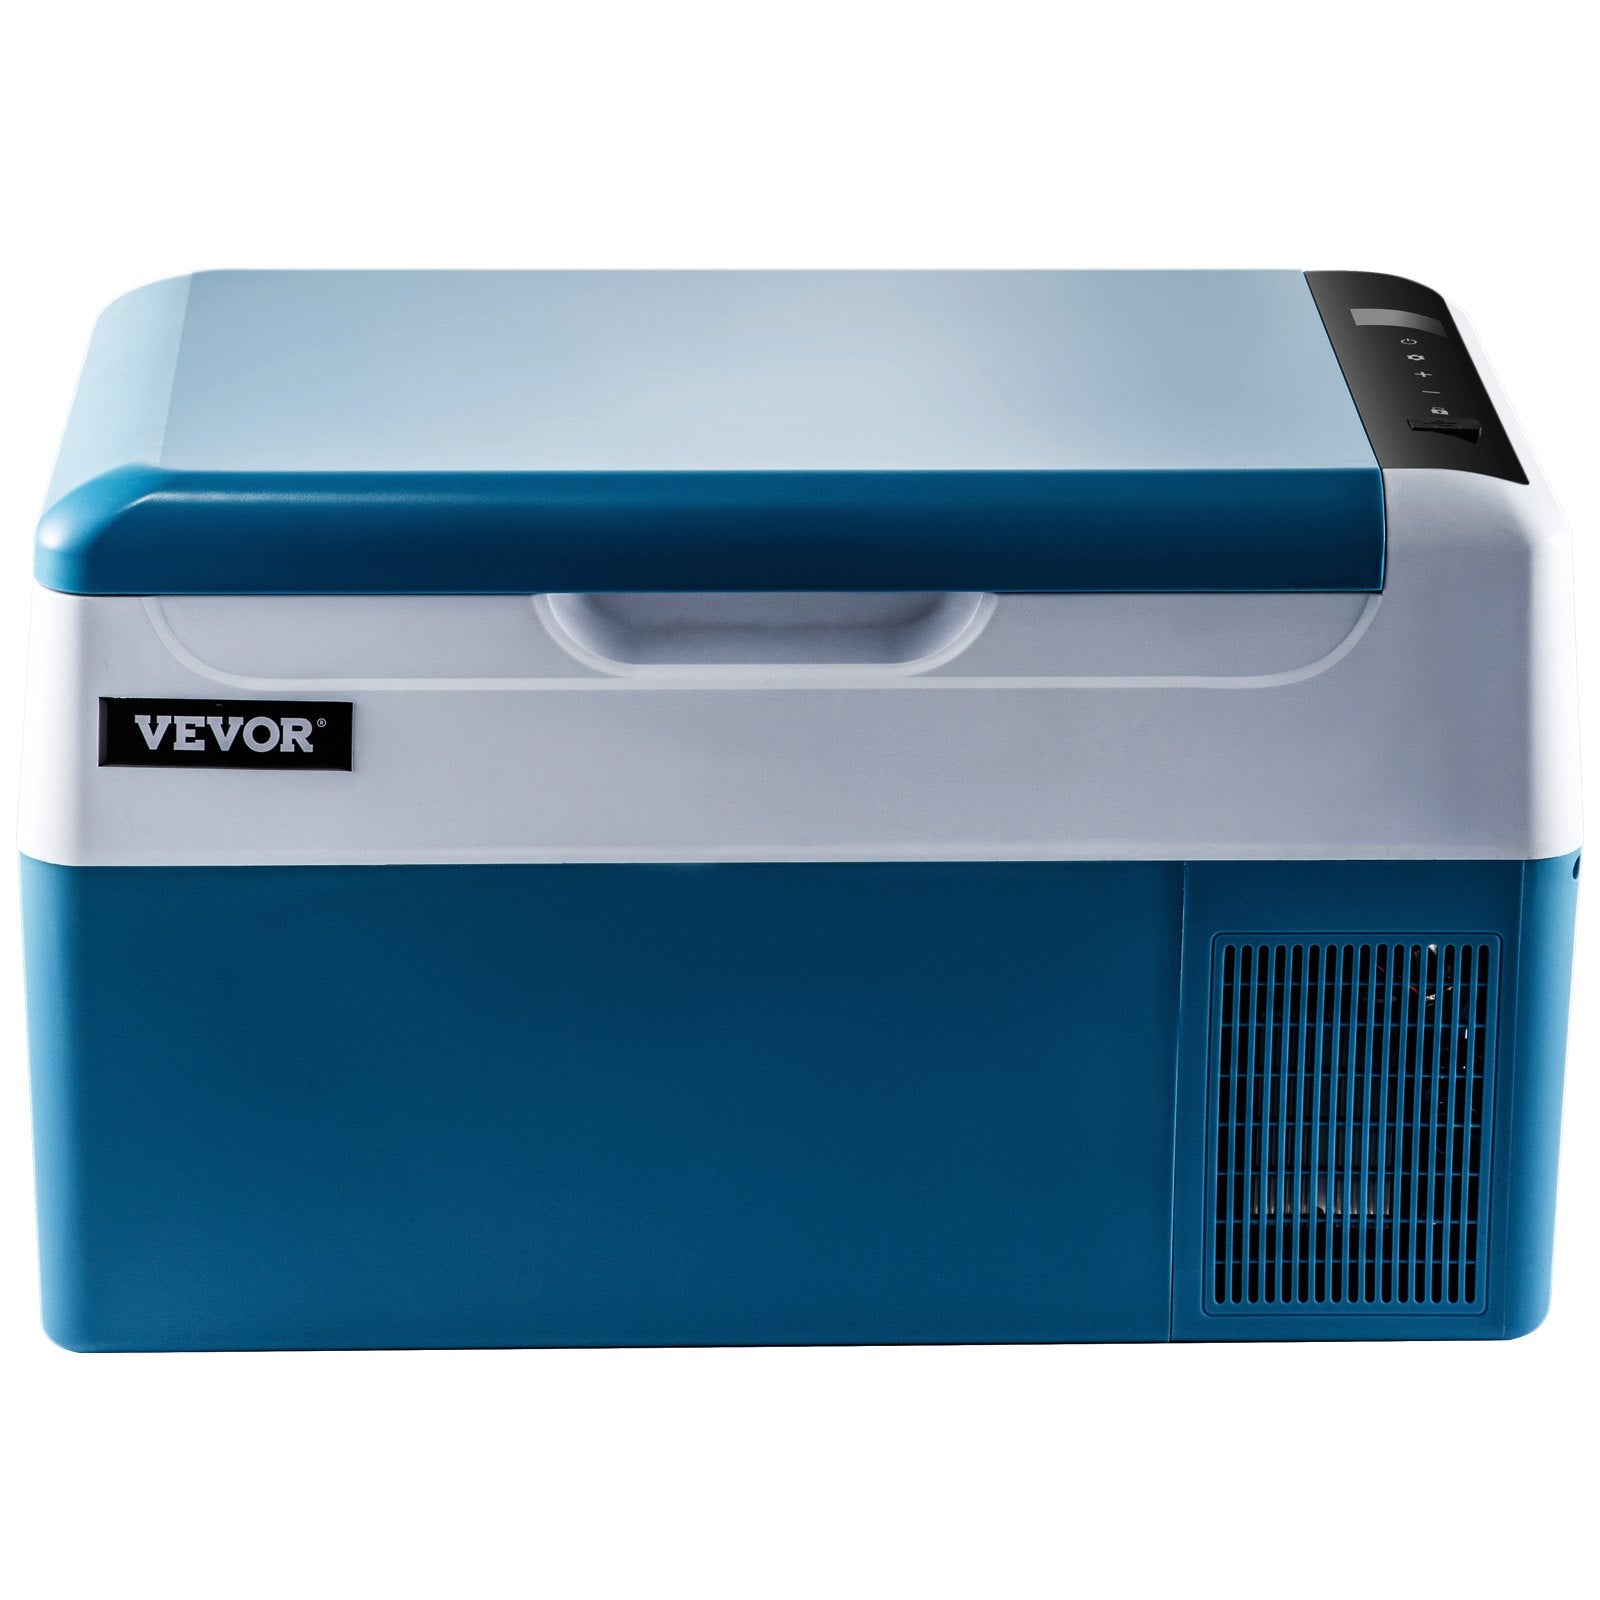 VEVOR Portable Refrigerator 23 Quart(22 Liter), 12 Volt Refrigerator App Control(-4℉~68℉), Car Refrigerator Electric Compressor Cooler with 12/24v DC & 110-240v AC for Camping, Travel, Fishing, Outdoor or Home Use